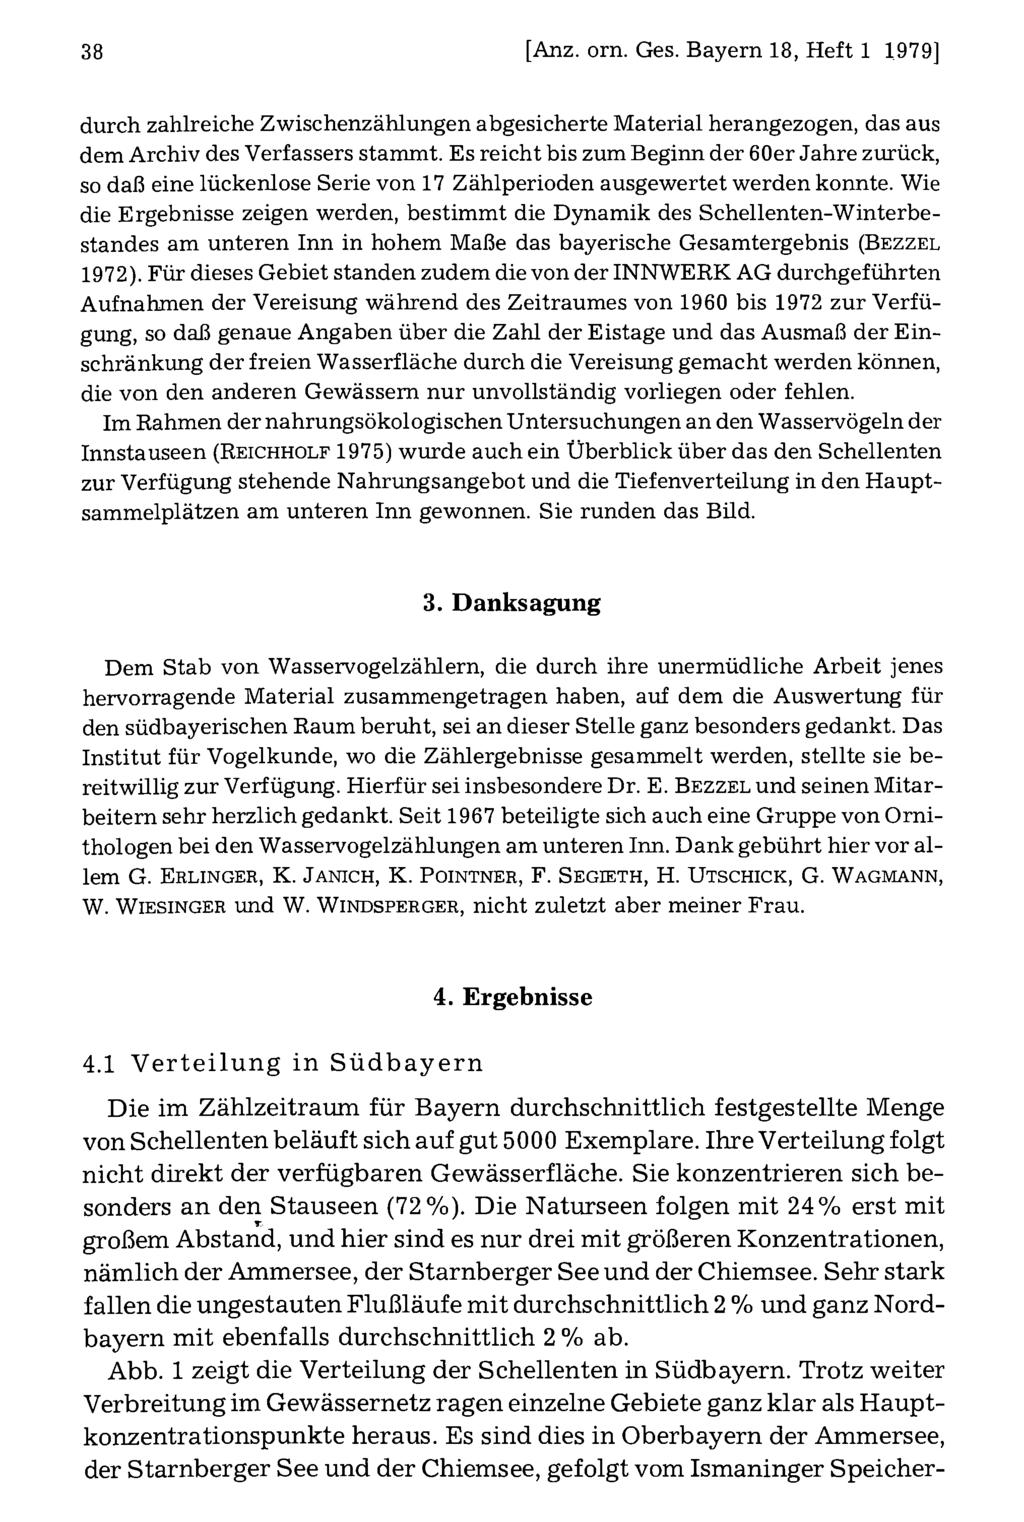 38 Ornithologische Gesellschaft Bayern, download [Anz. unter orn. www.biologiezentrum.at Ges.